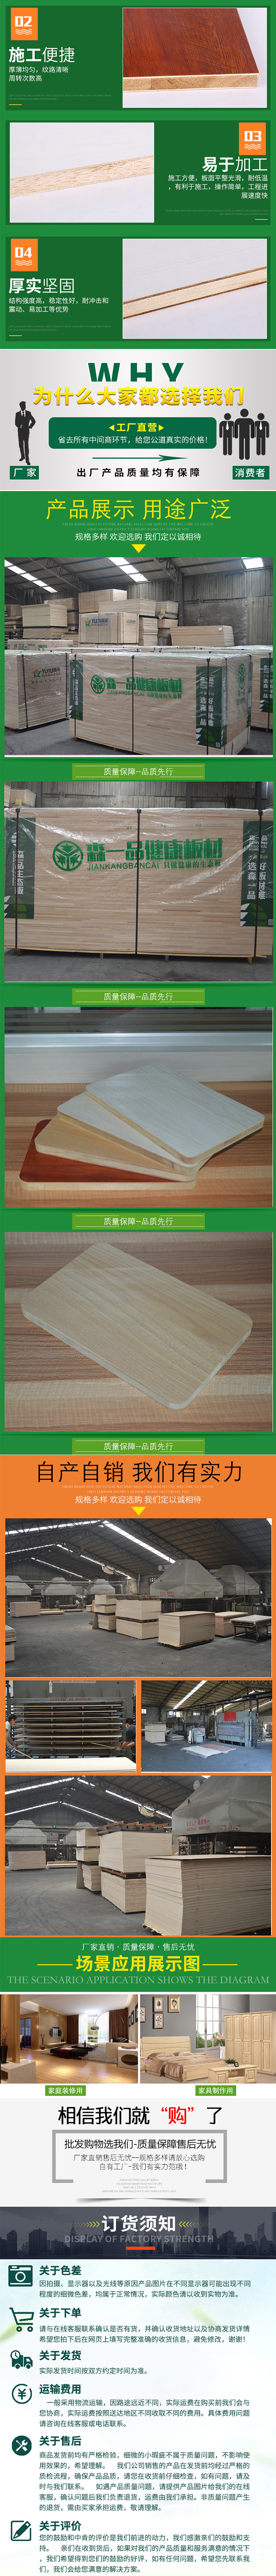 18mm杉木生态板 森一品多层生态板厂家 生态板批发市场